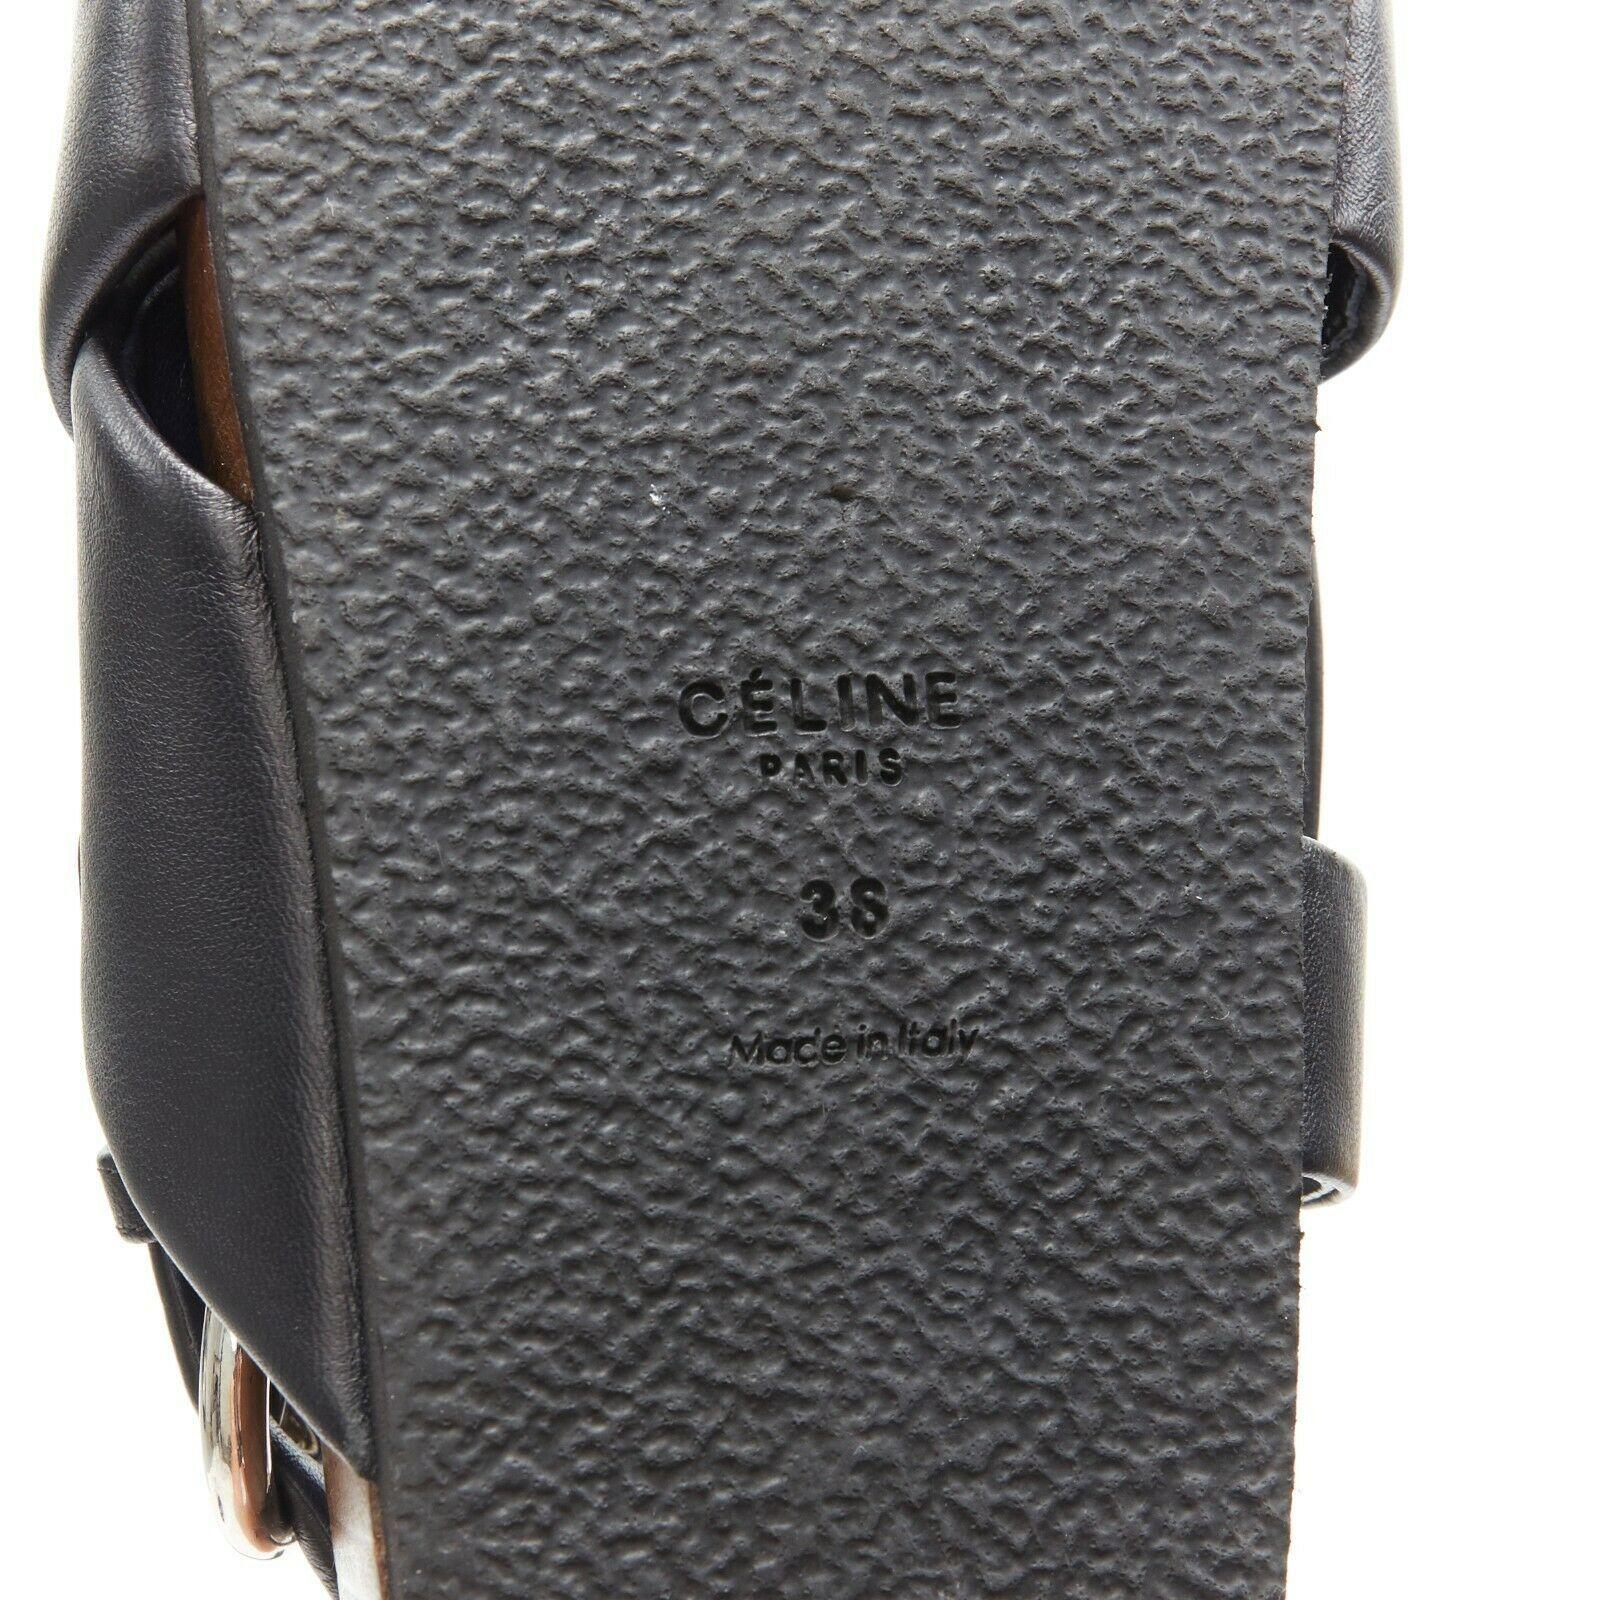 CELINE PHOEBE PHILO black padded leather twist slides slingback sandals EU38 3